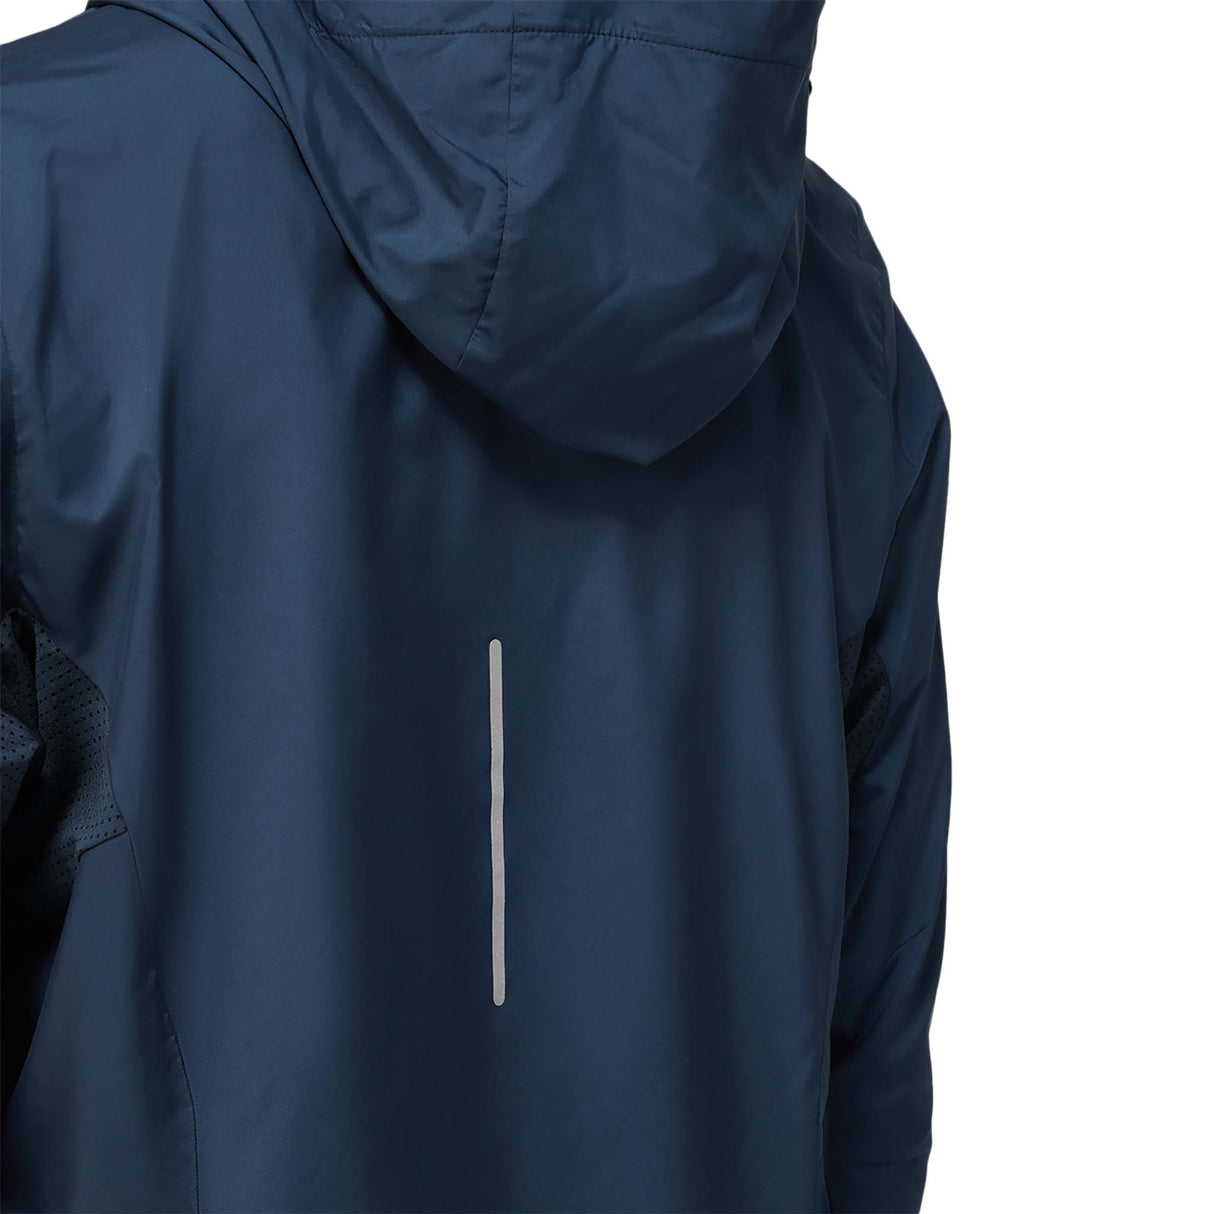 ASICS Lite-Show Jacket veste de course french blue femme details dos